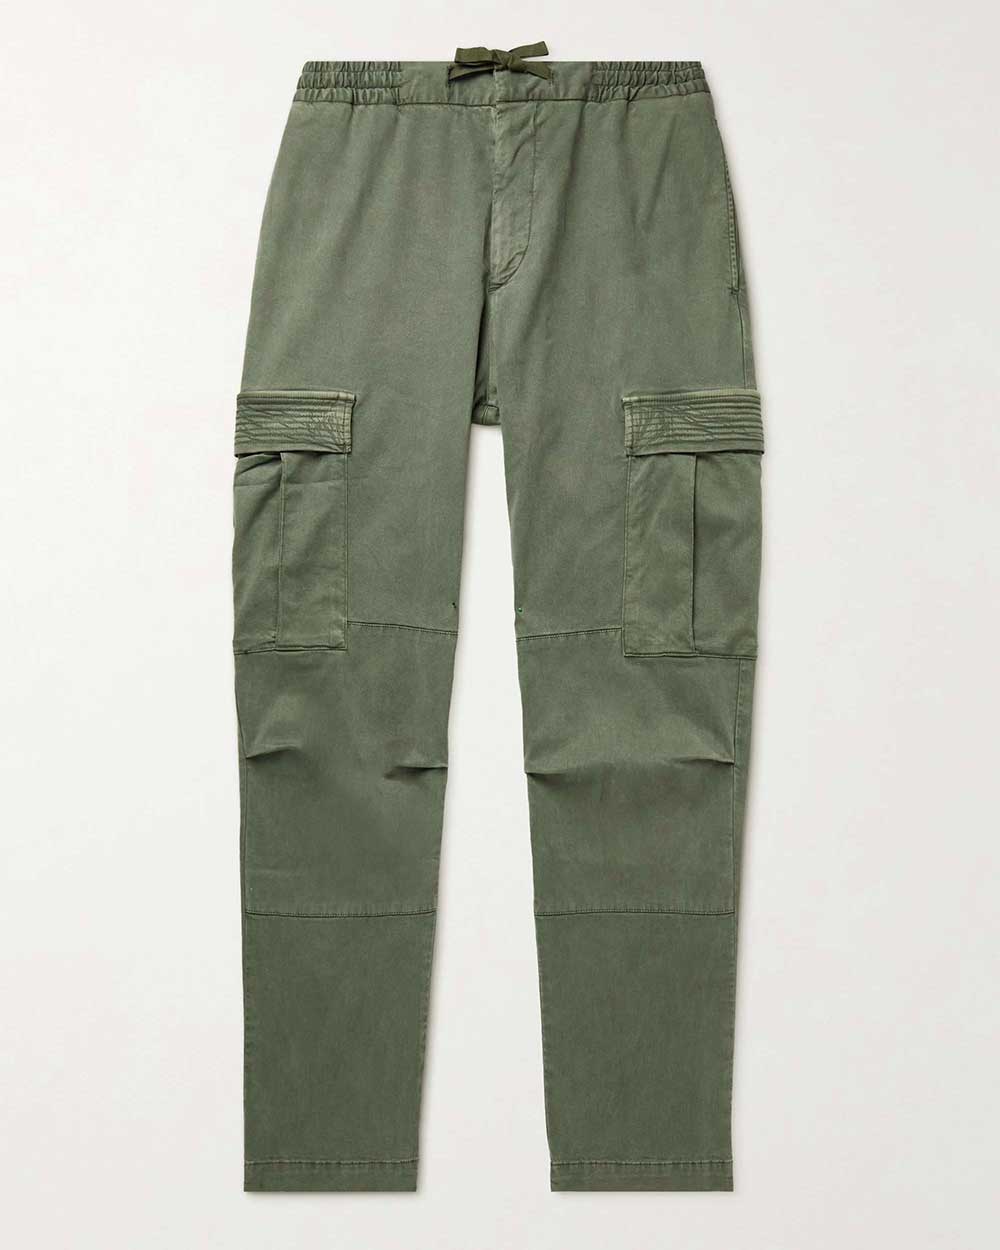 officine-generale-twill-cargo-pants-2000s-fashionjpg - He Spoke Style